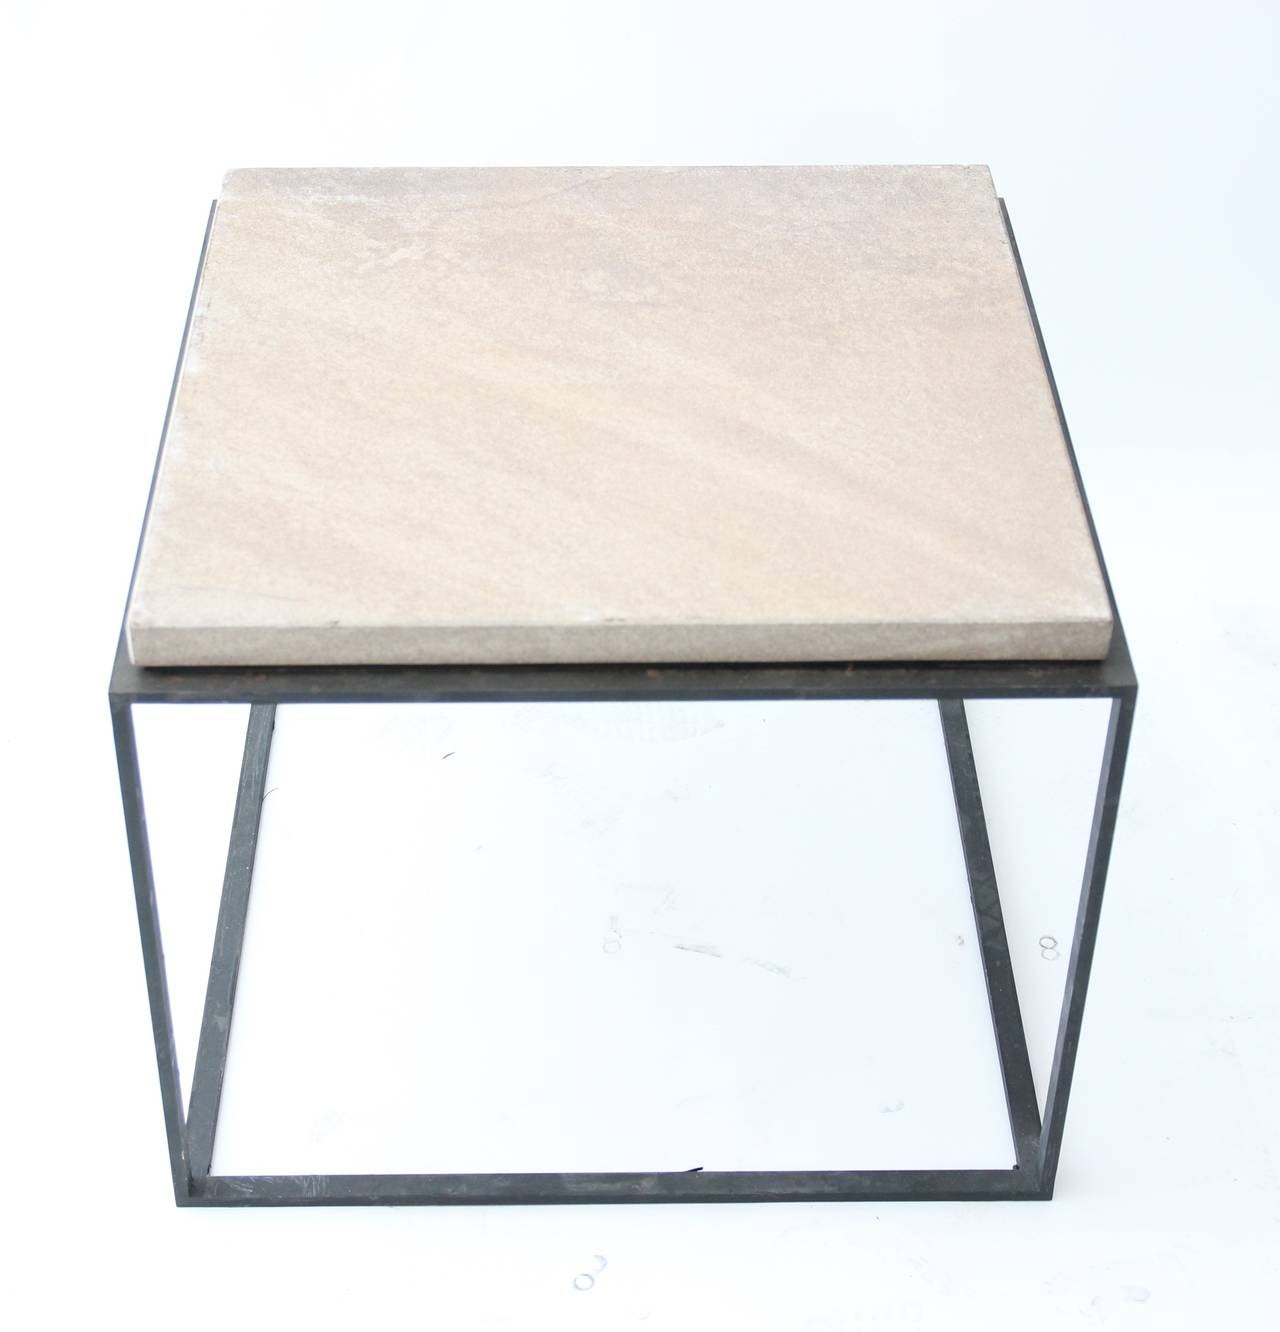 Ensemble de quatre tables basses dans le style de Paul Dupré-Lafon,
base en fer et plateau en granit,
France, vers 1980.
Provenance : Jardin de la cour Terrasses du 